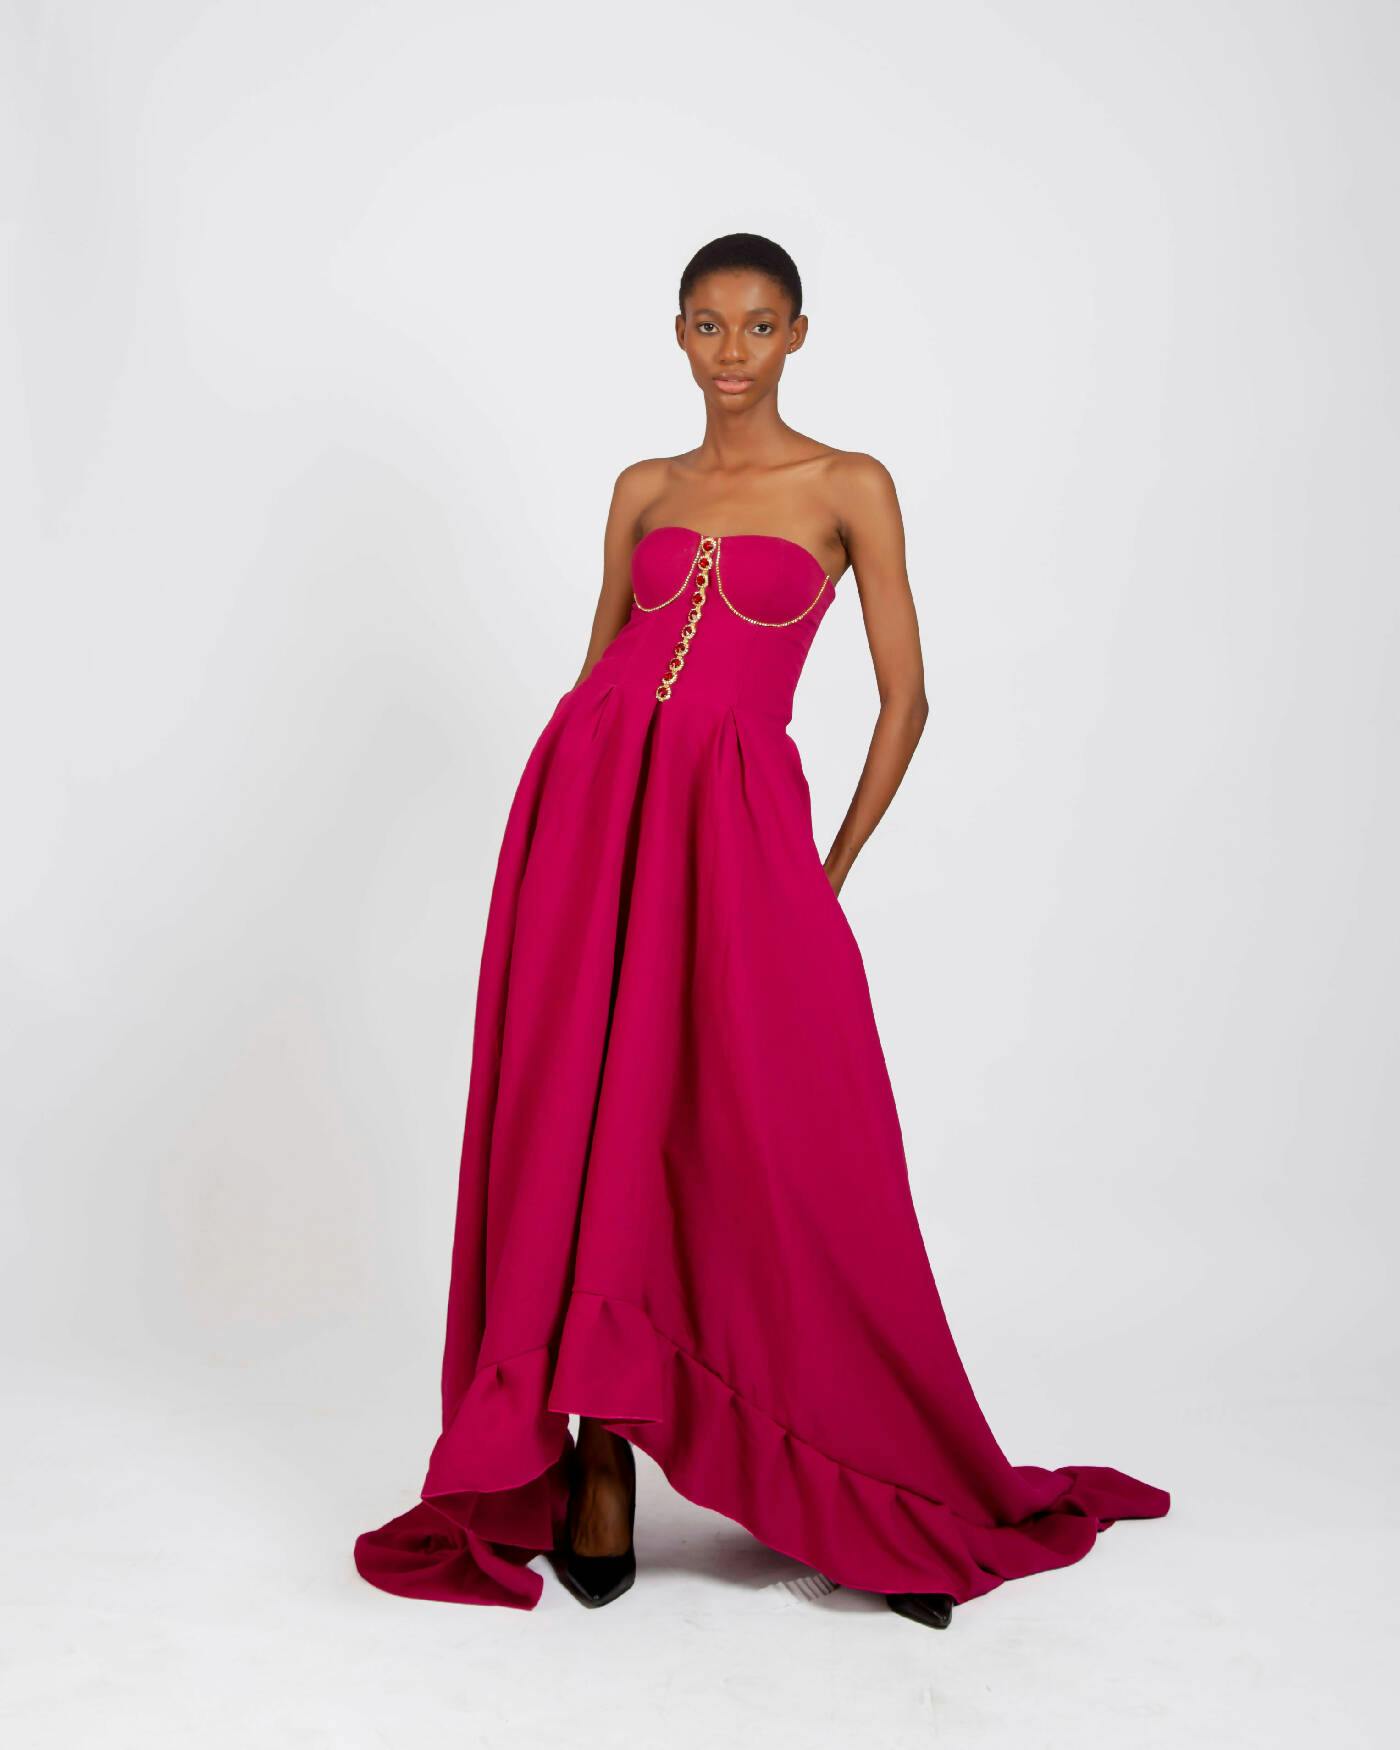 Embellished Corset Ball Dress, a product by Joseph Ejiro